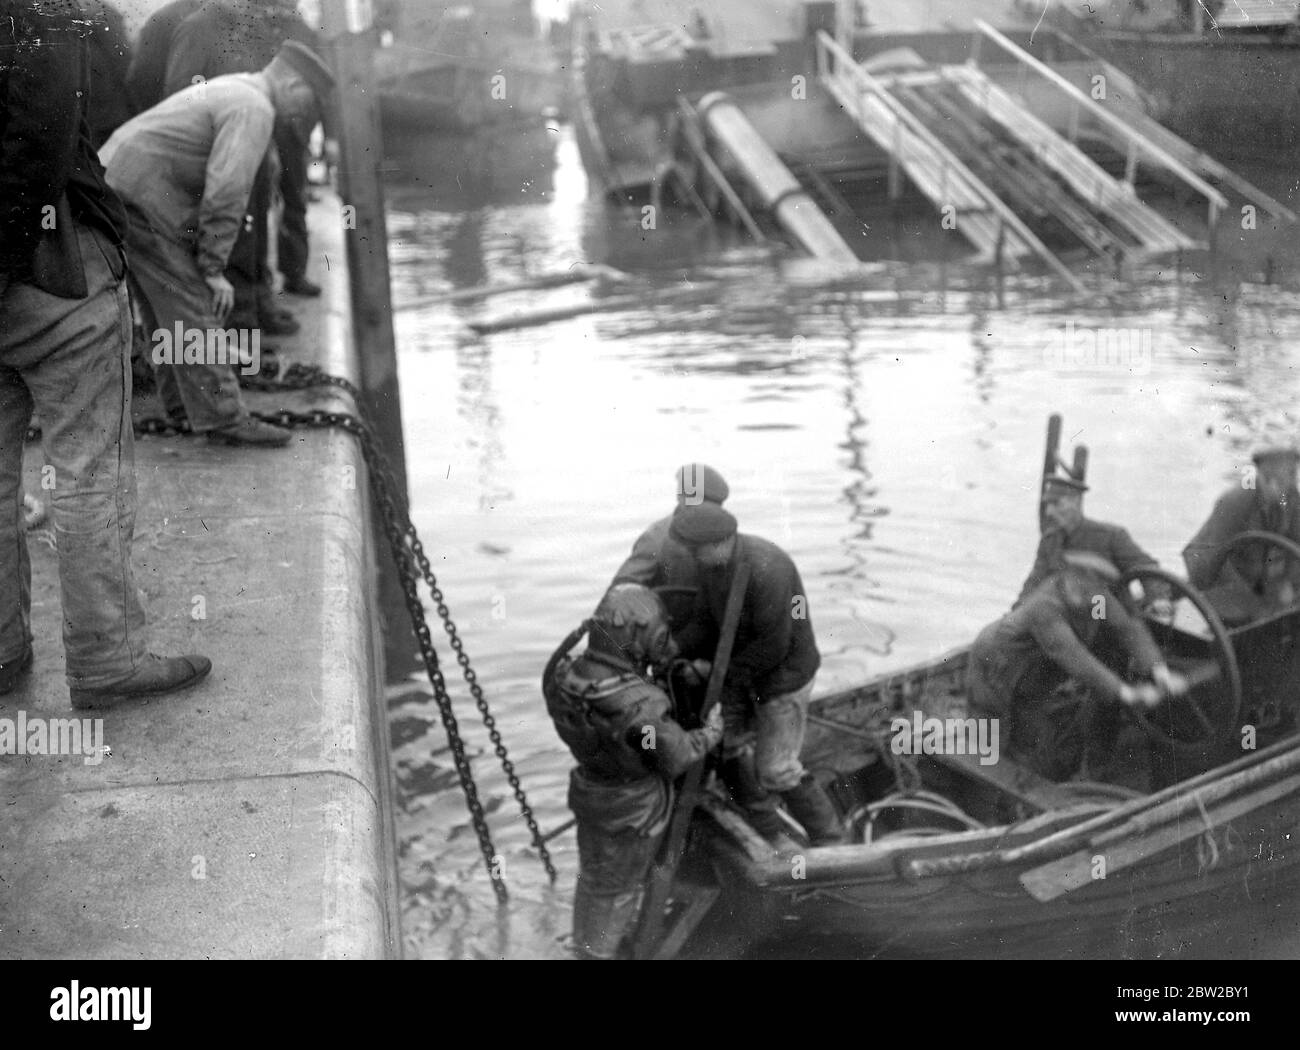 Die versunkenen Schiffe in Ostende abräumen. Pumpen muss manchmal Tag und Nacht durchgeführt werden, um mit dem Zufluss Schritt zu halten und Zeit beim Anheben zu sparen. November 1918 Stockfoto